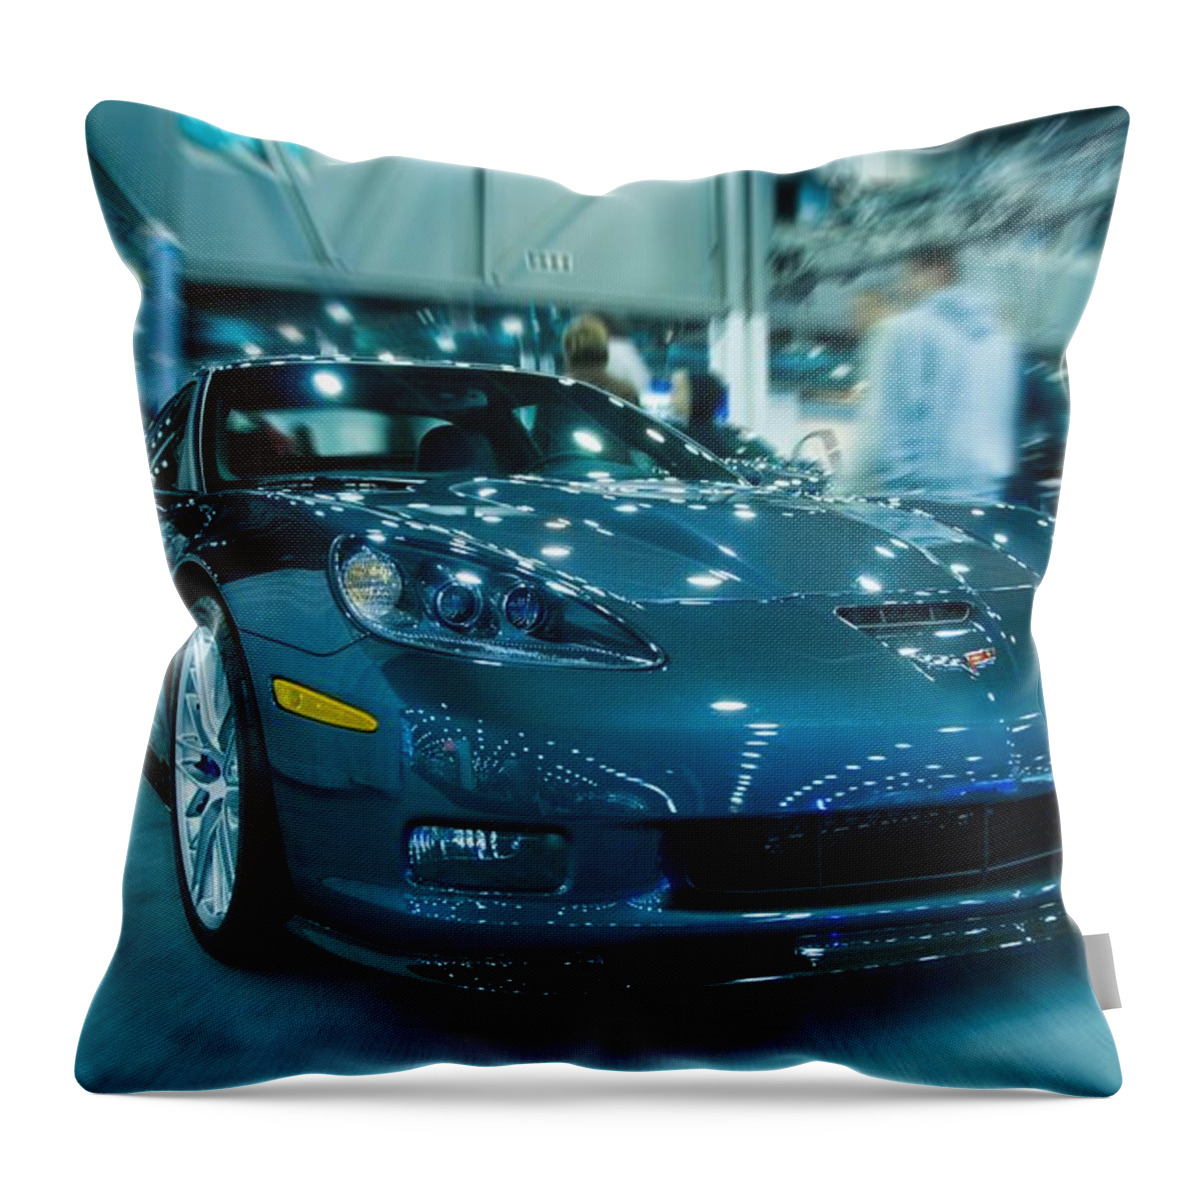 Chevrolet Corvette Throw Pillow featuring the digital art Chevrolet Corvette #11 by Super Lovely